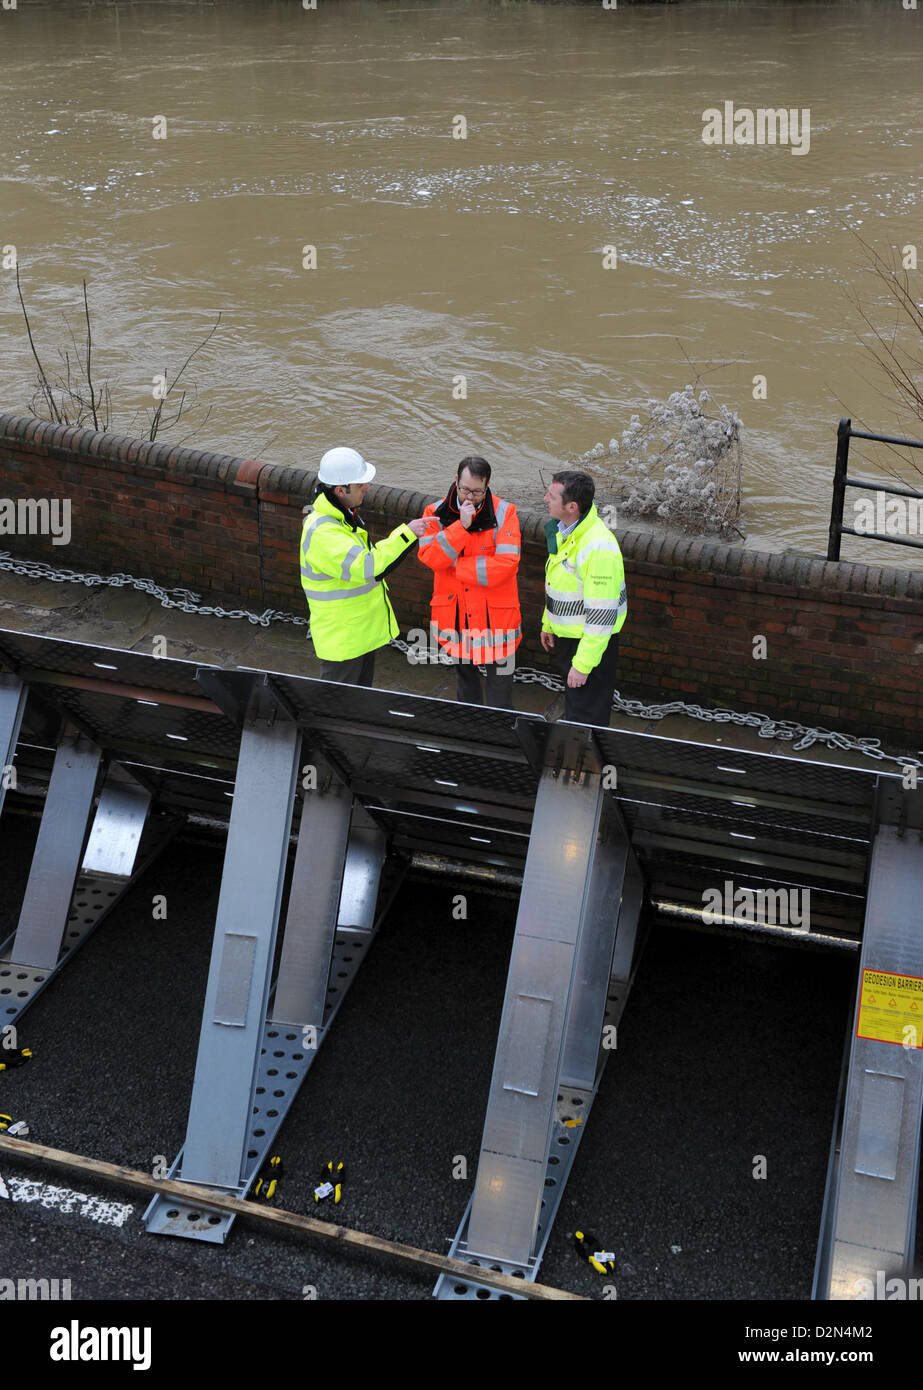 La rivière Severn est gonflée derrière les barrières d'inondation à Ironbridge, Shropshire, au Royaume-Uni. 29 janvier 2013. Les responsables de l'Agence de l'environnement discutent de la situation alors que des barrières contre les inondations sont érigées contre la rivière Severn à Ironbridge Banque D'Images